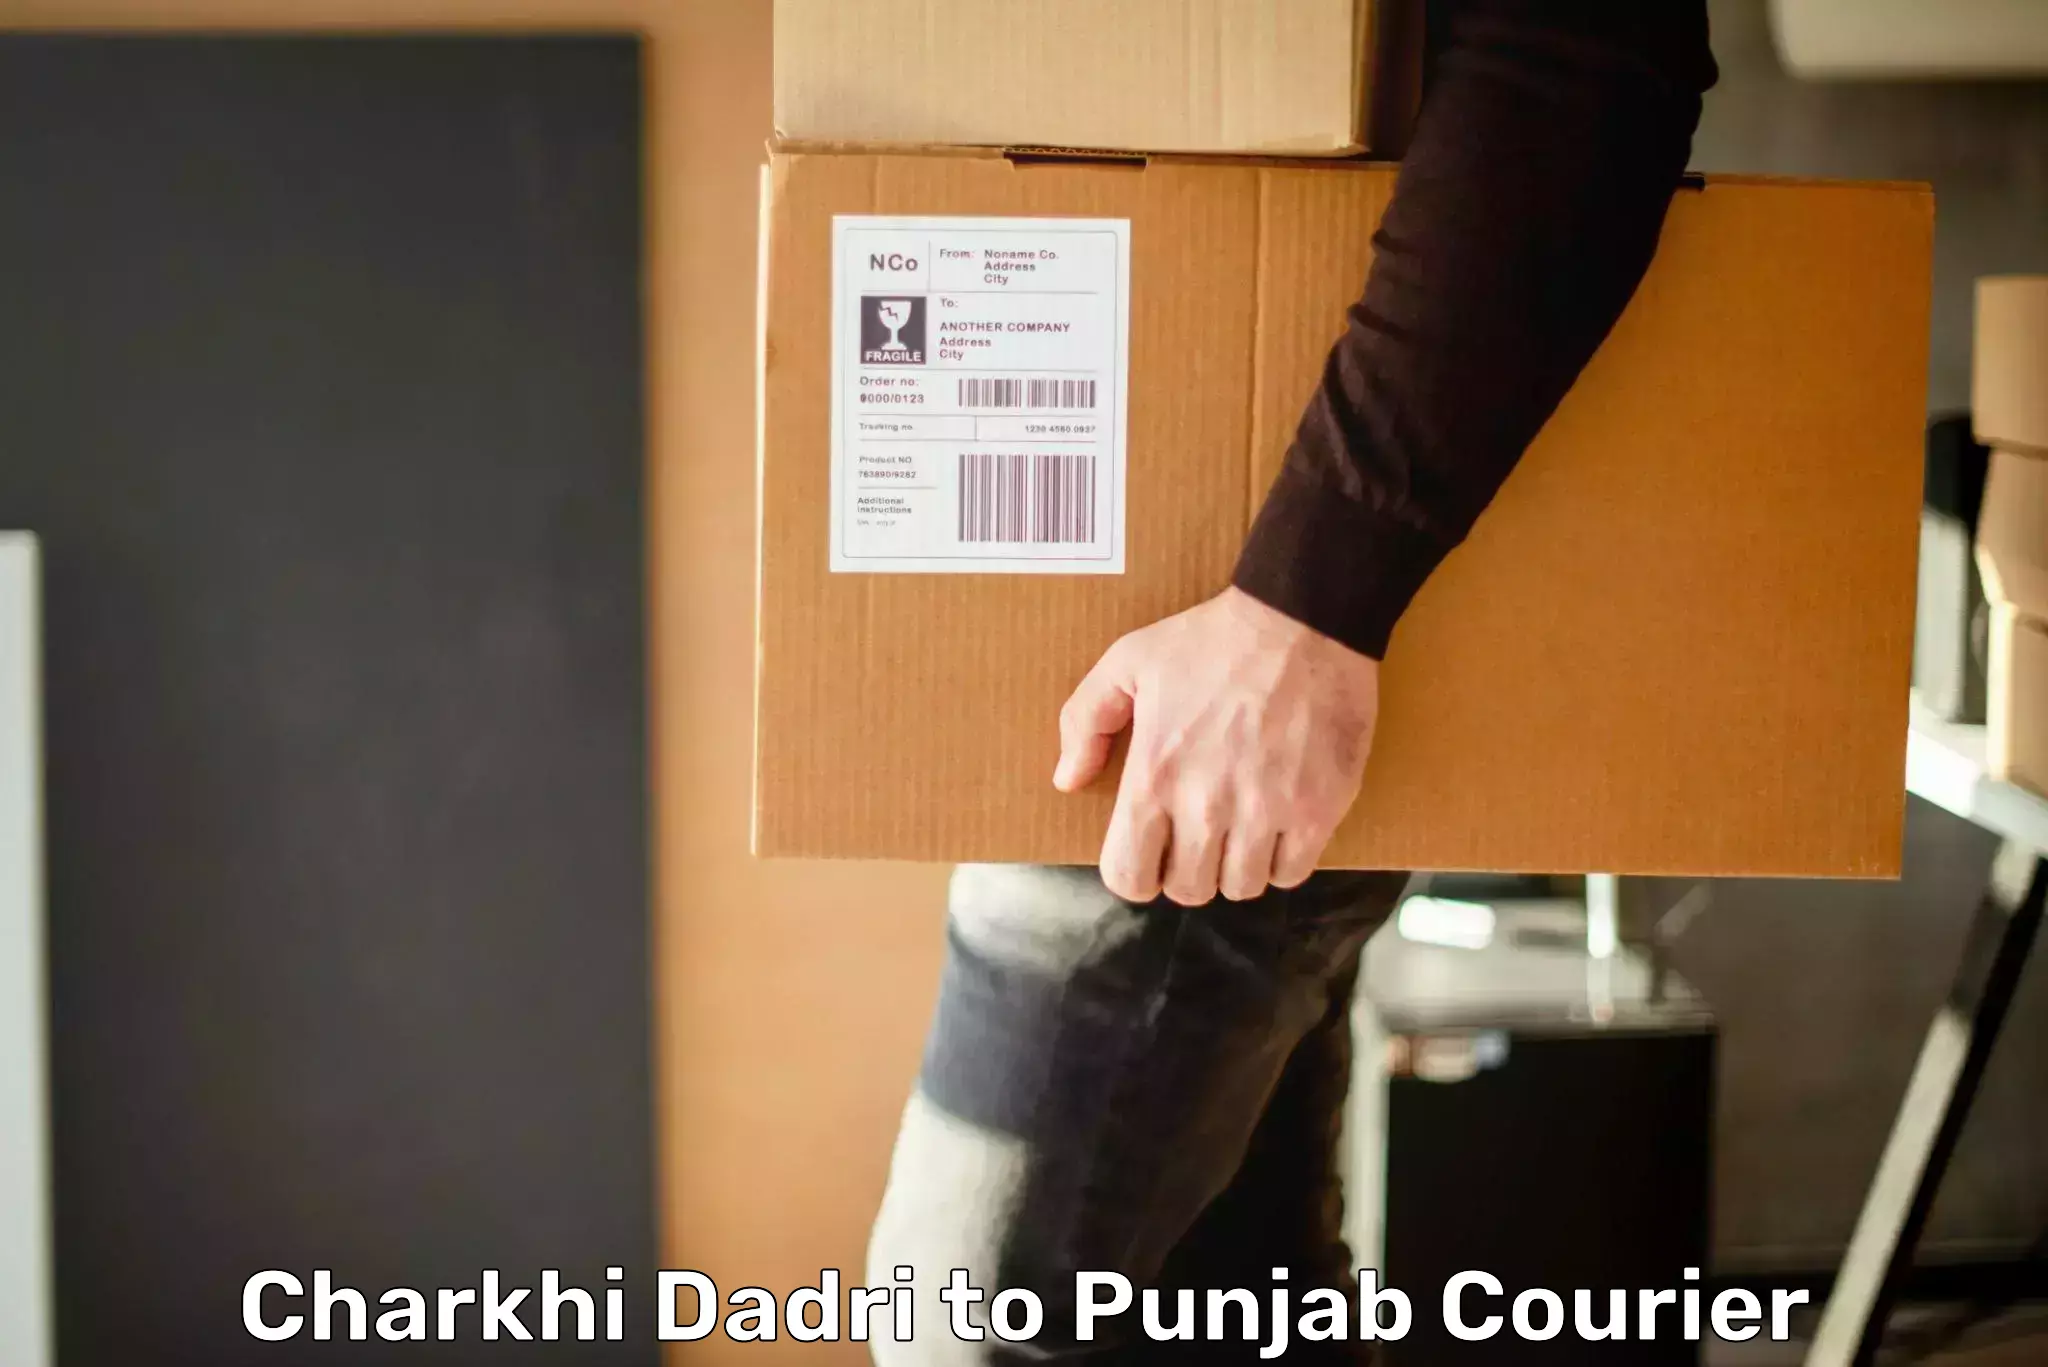 International courier networks Charkhi Dadri to Fazilka